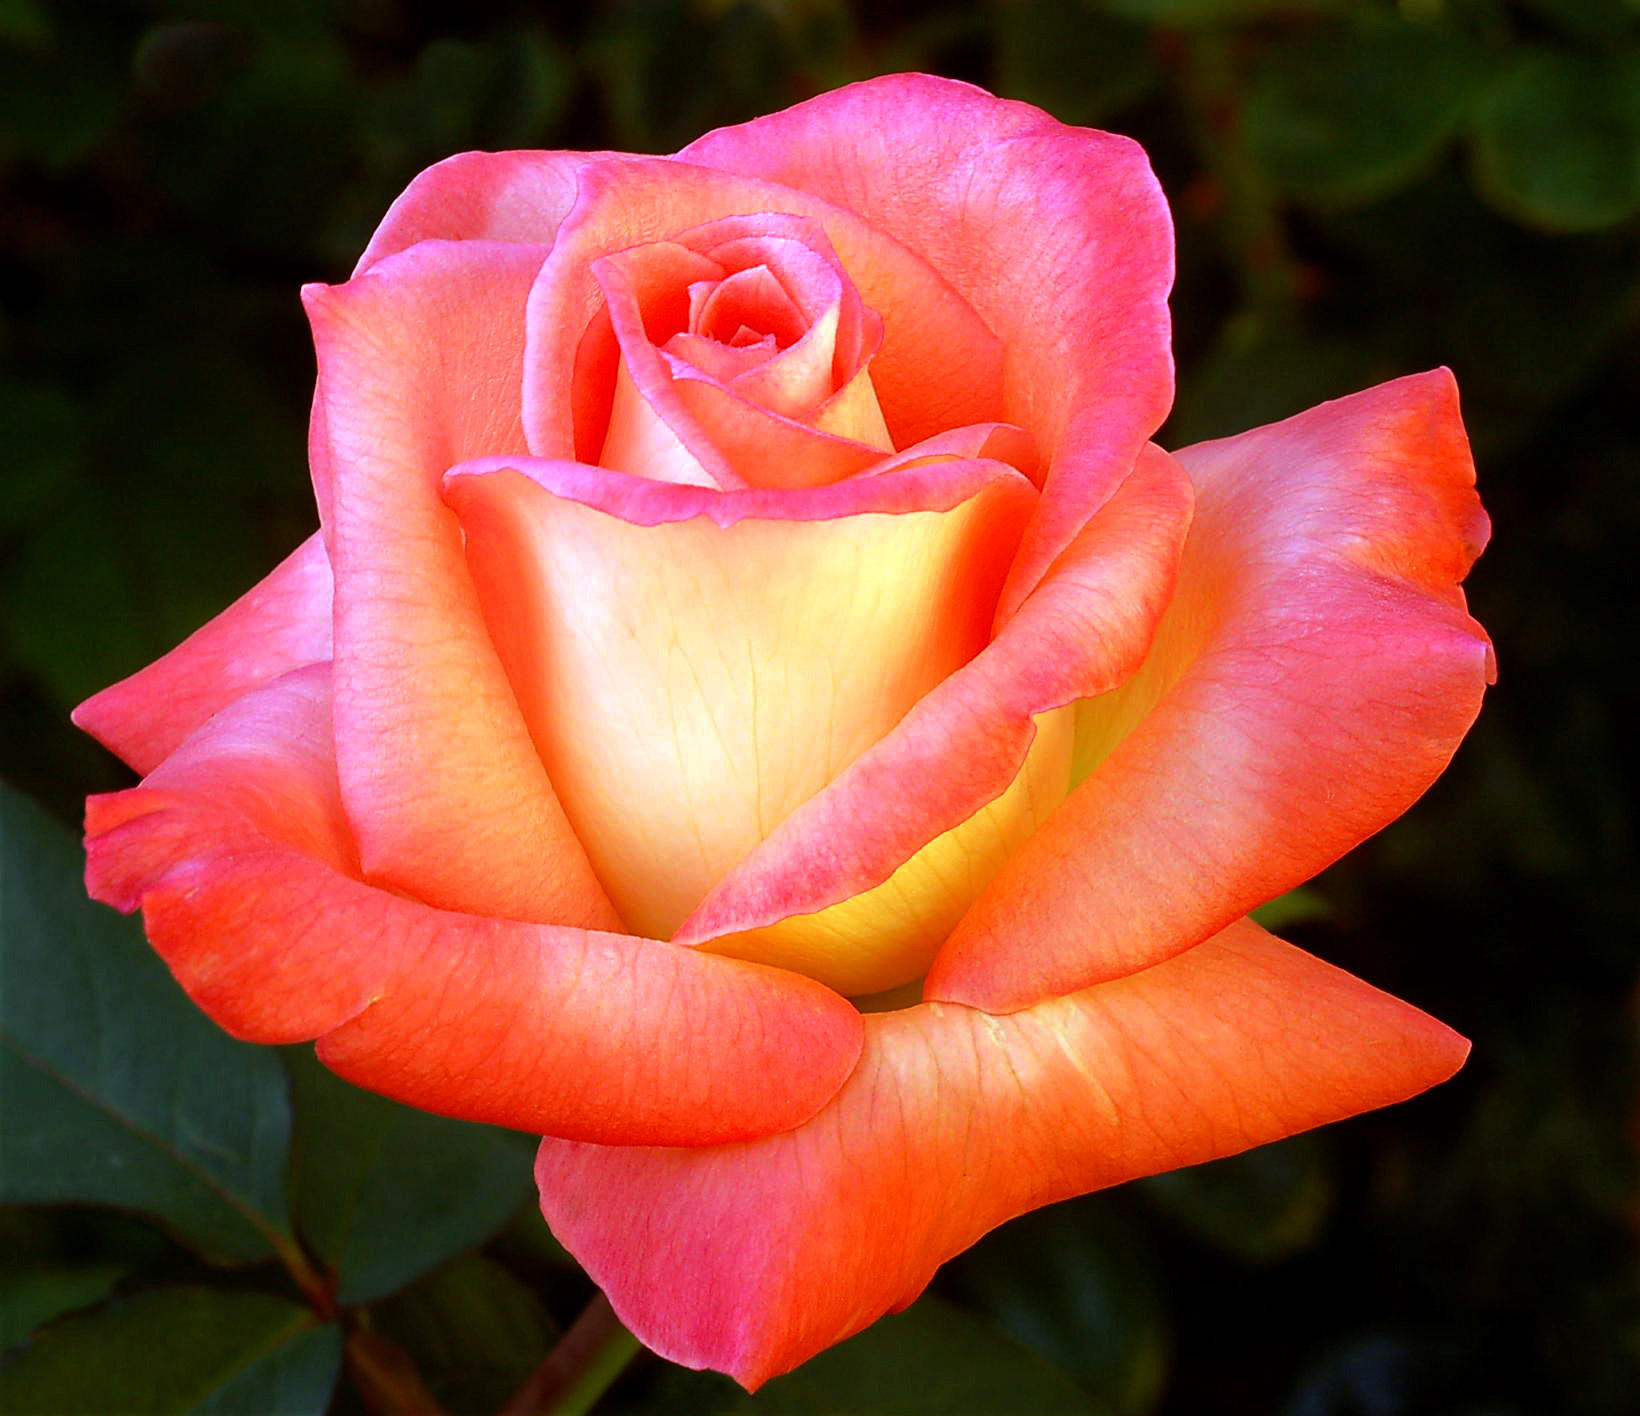 belle immagini di rose per carta da parati,fiore,rosa,rose da giardino,pianta fiorita,julia child rose